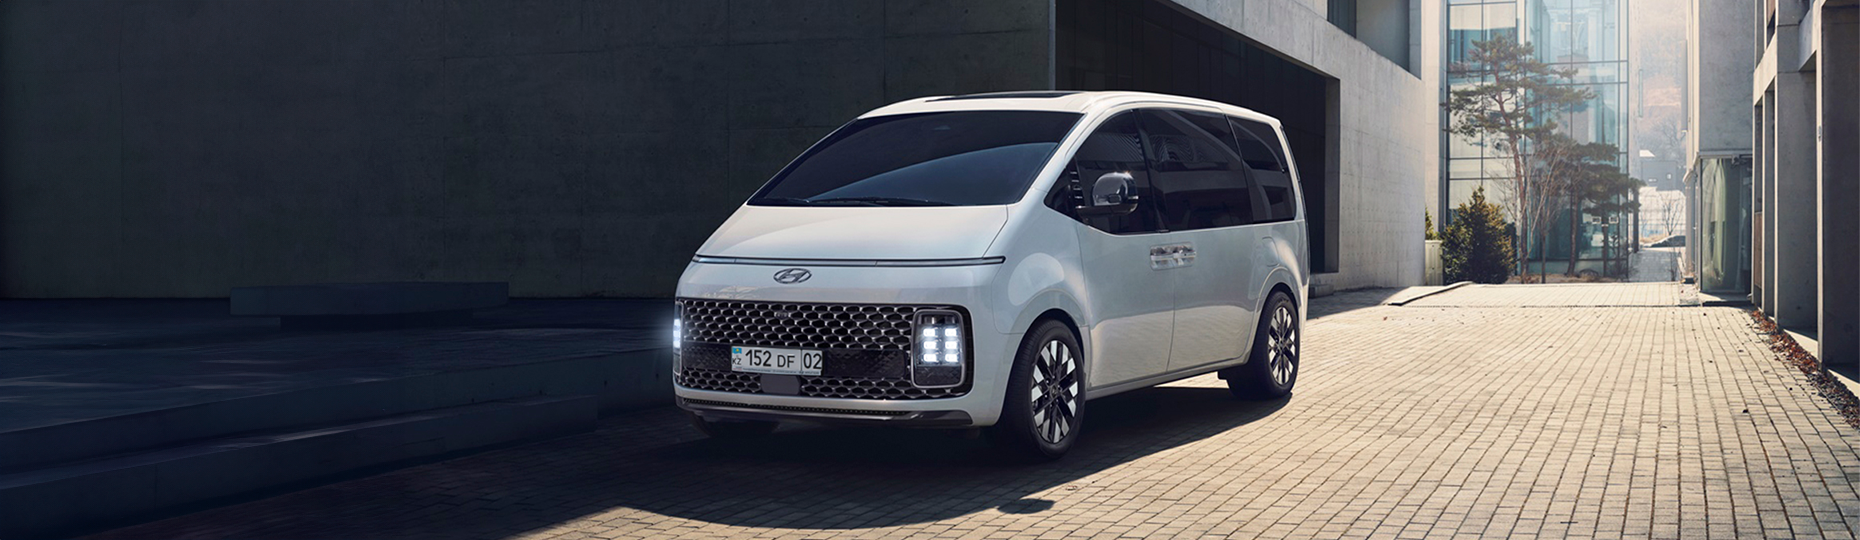 Цена и комплектация нового Hyundai Staria в Алматы